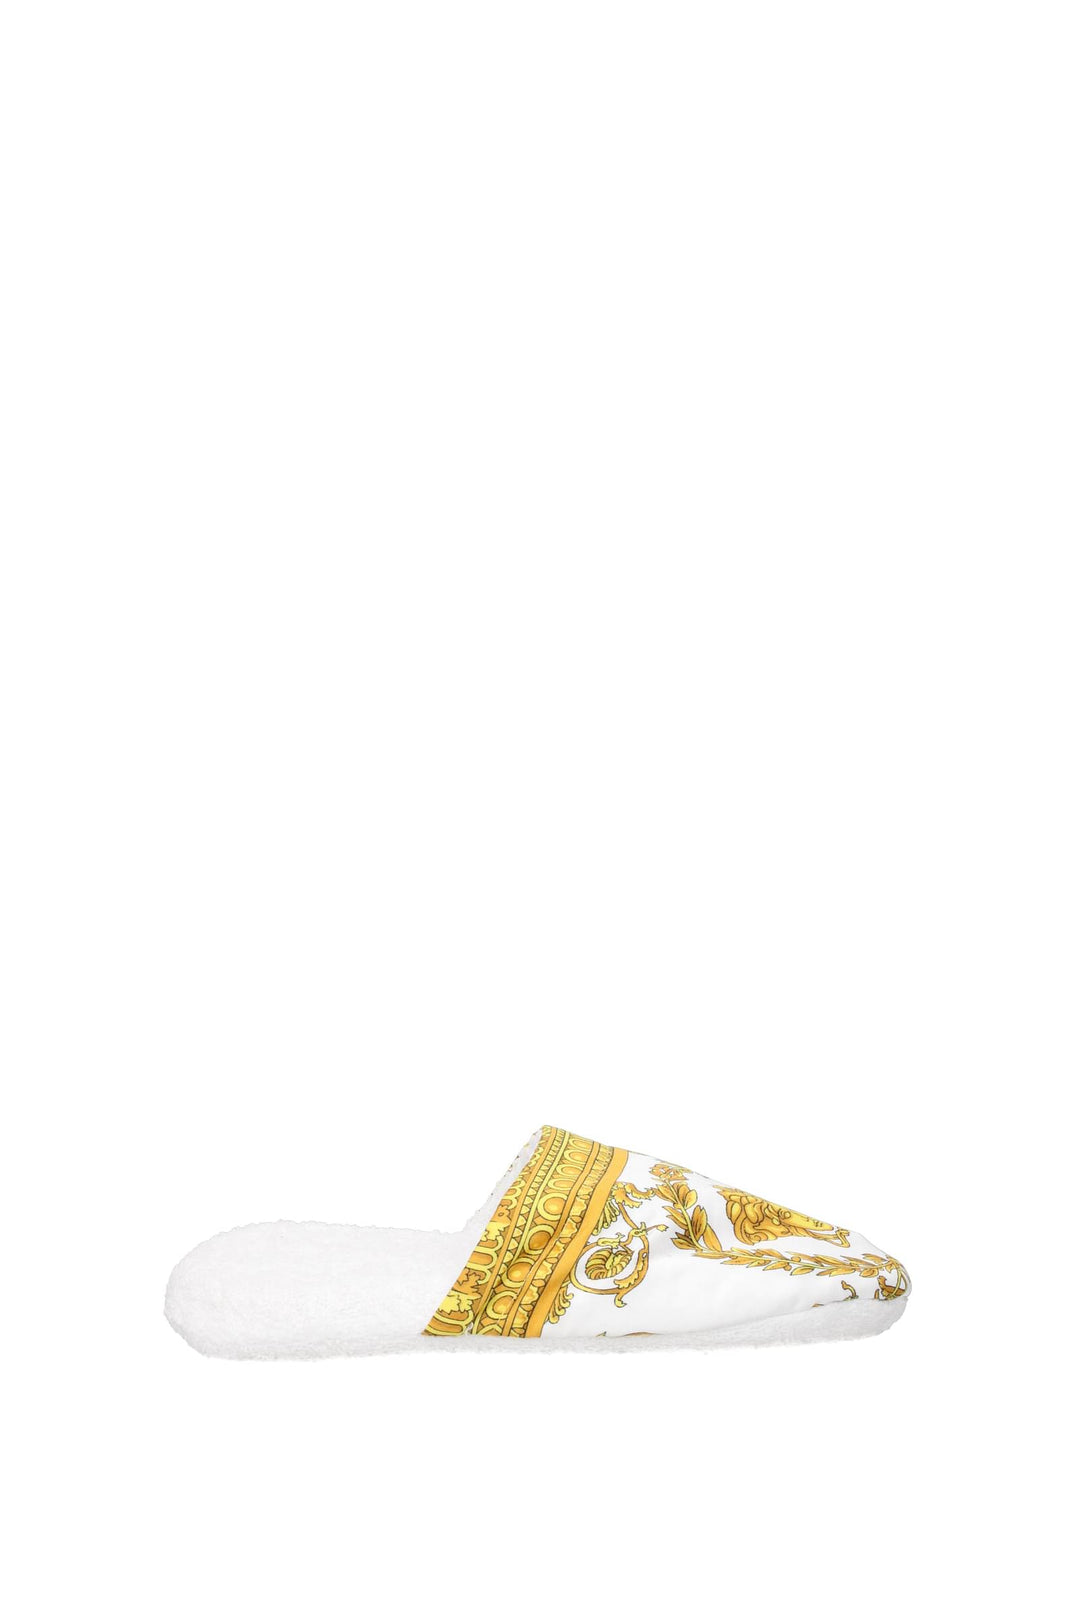 Ciabatte E Zoccoli Tessuto Bianco Oro - Versace - Donna